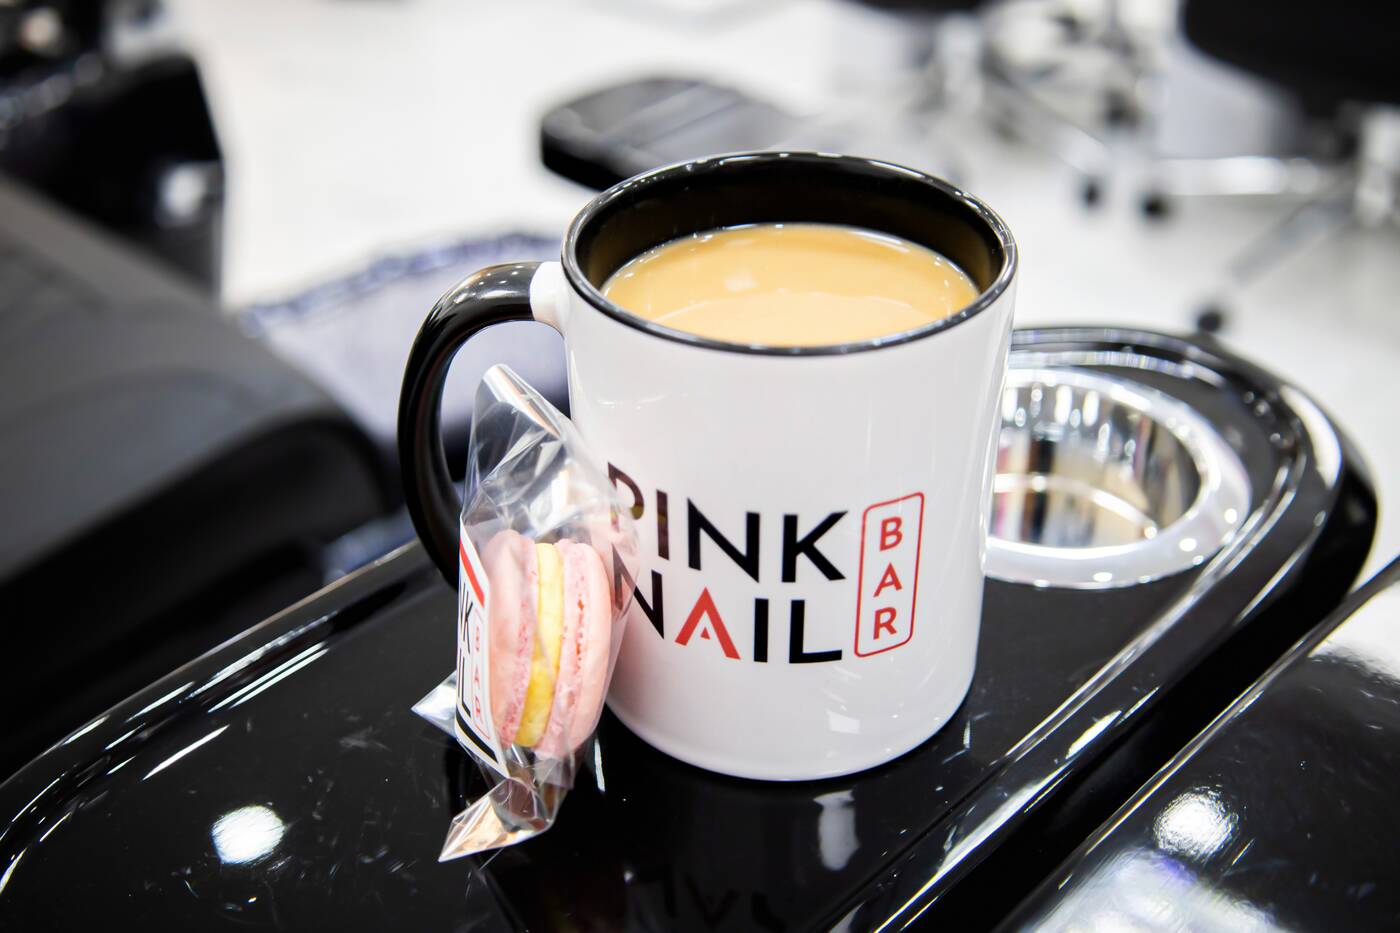 Pink Nail Bar Toronto